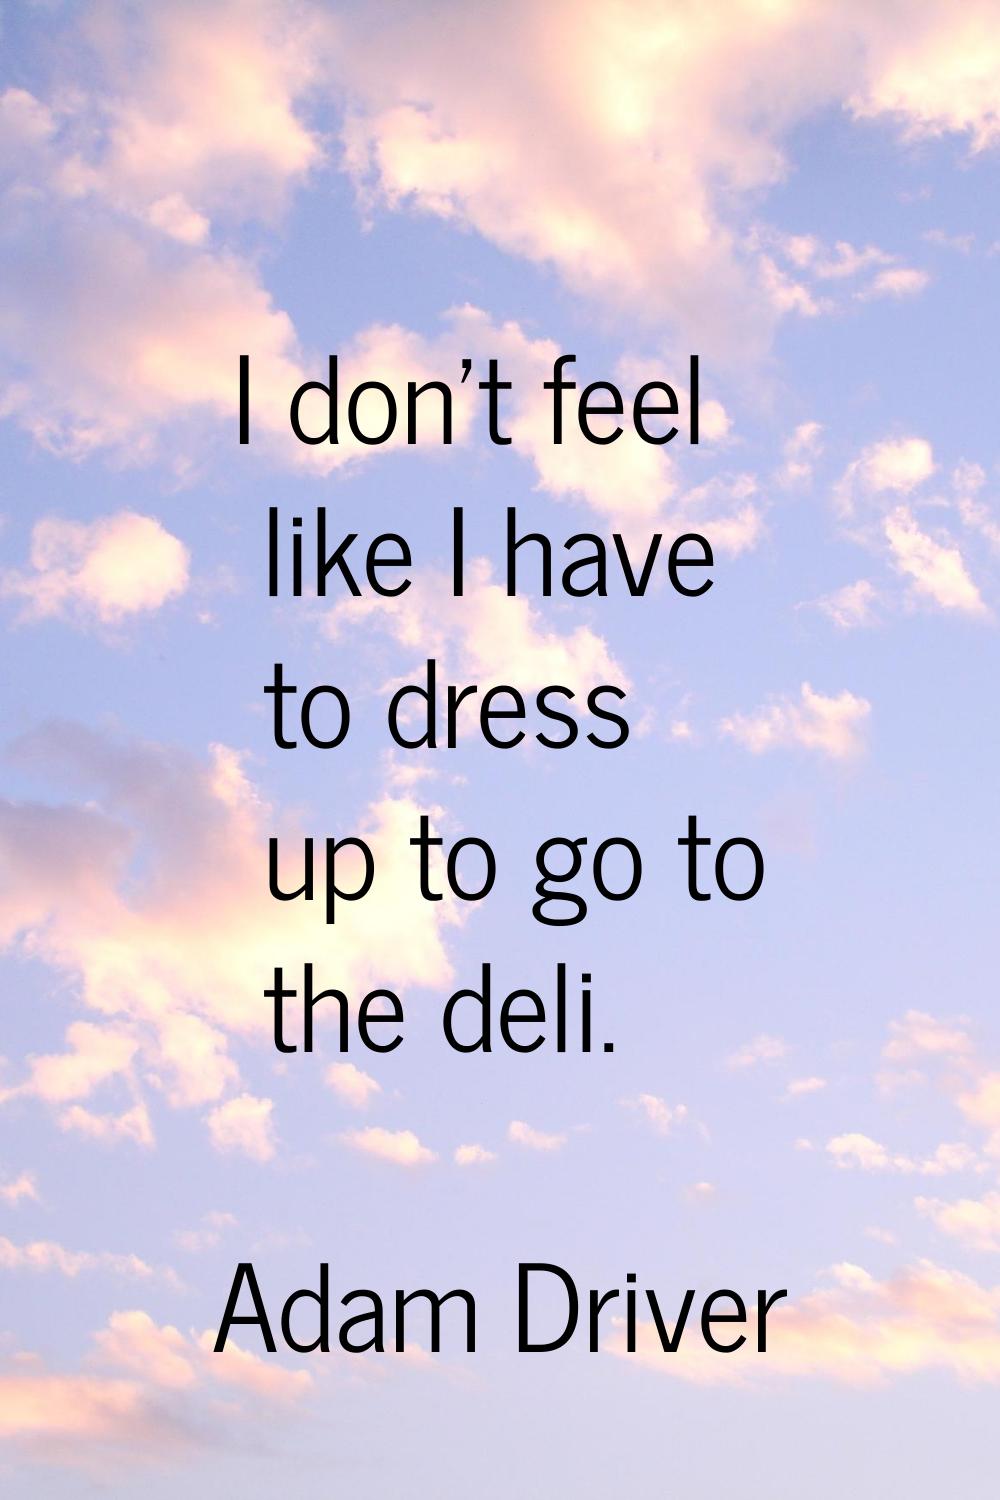 I don't feel like I have to dress up to go to the deli.